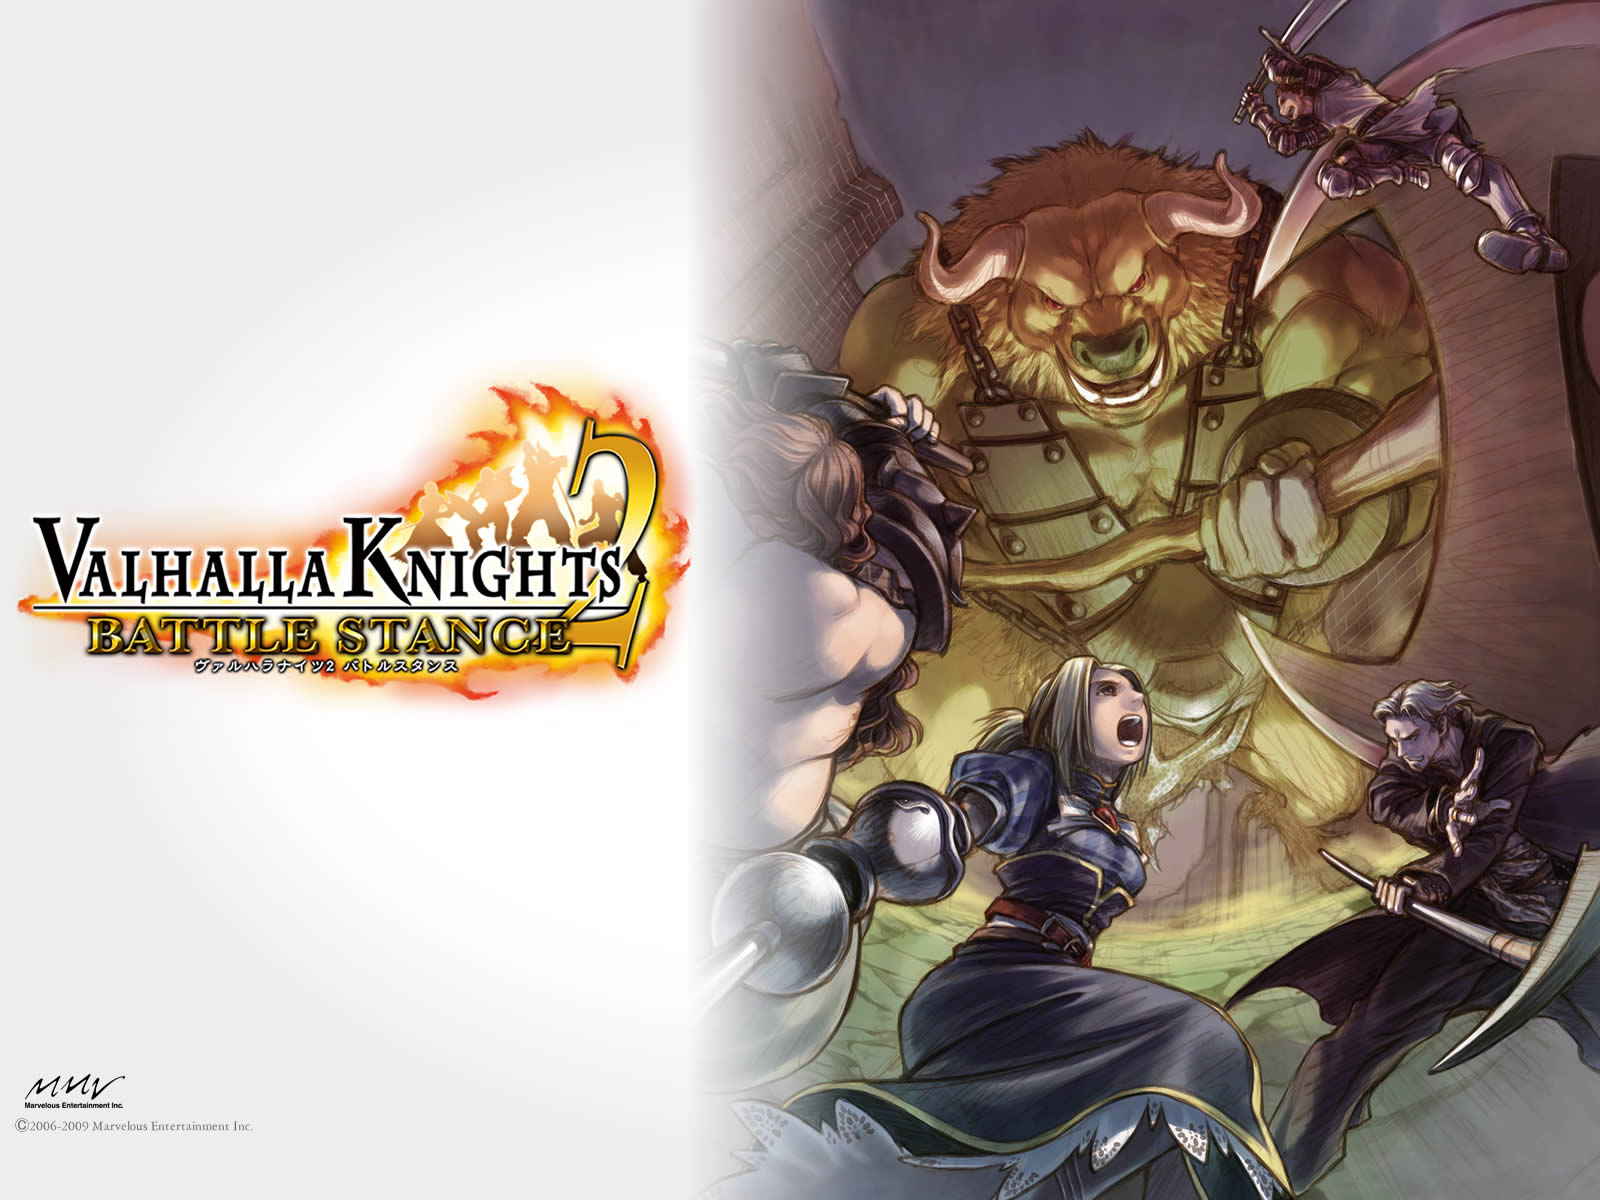 Valhalla Knights 2: Battle stance. Valhalla Knights 2 Battle stance PSP. Valhalla Knights 2 PSP. Kyabosean2 рыцарь и орк. Стенд кнайт версия